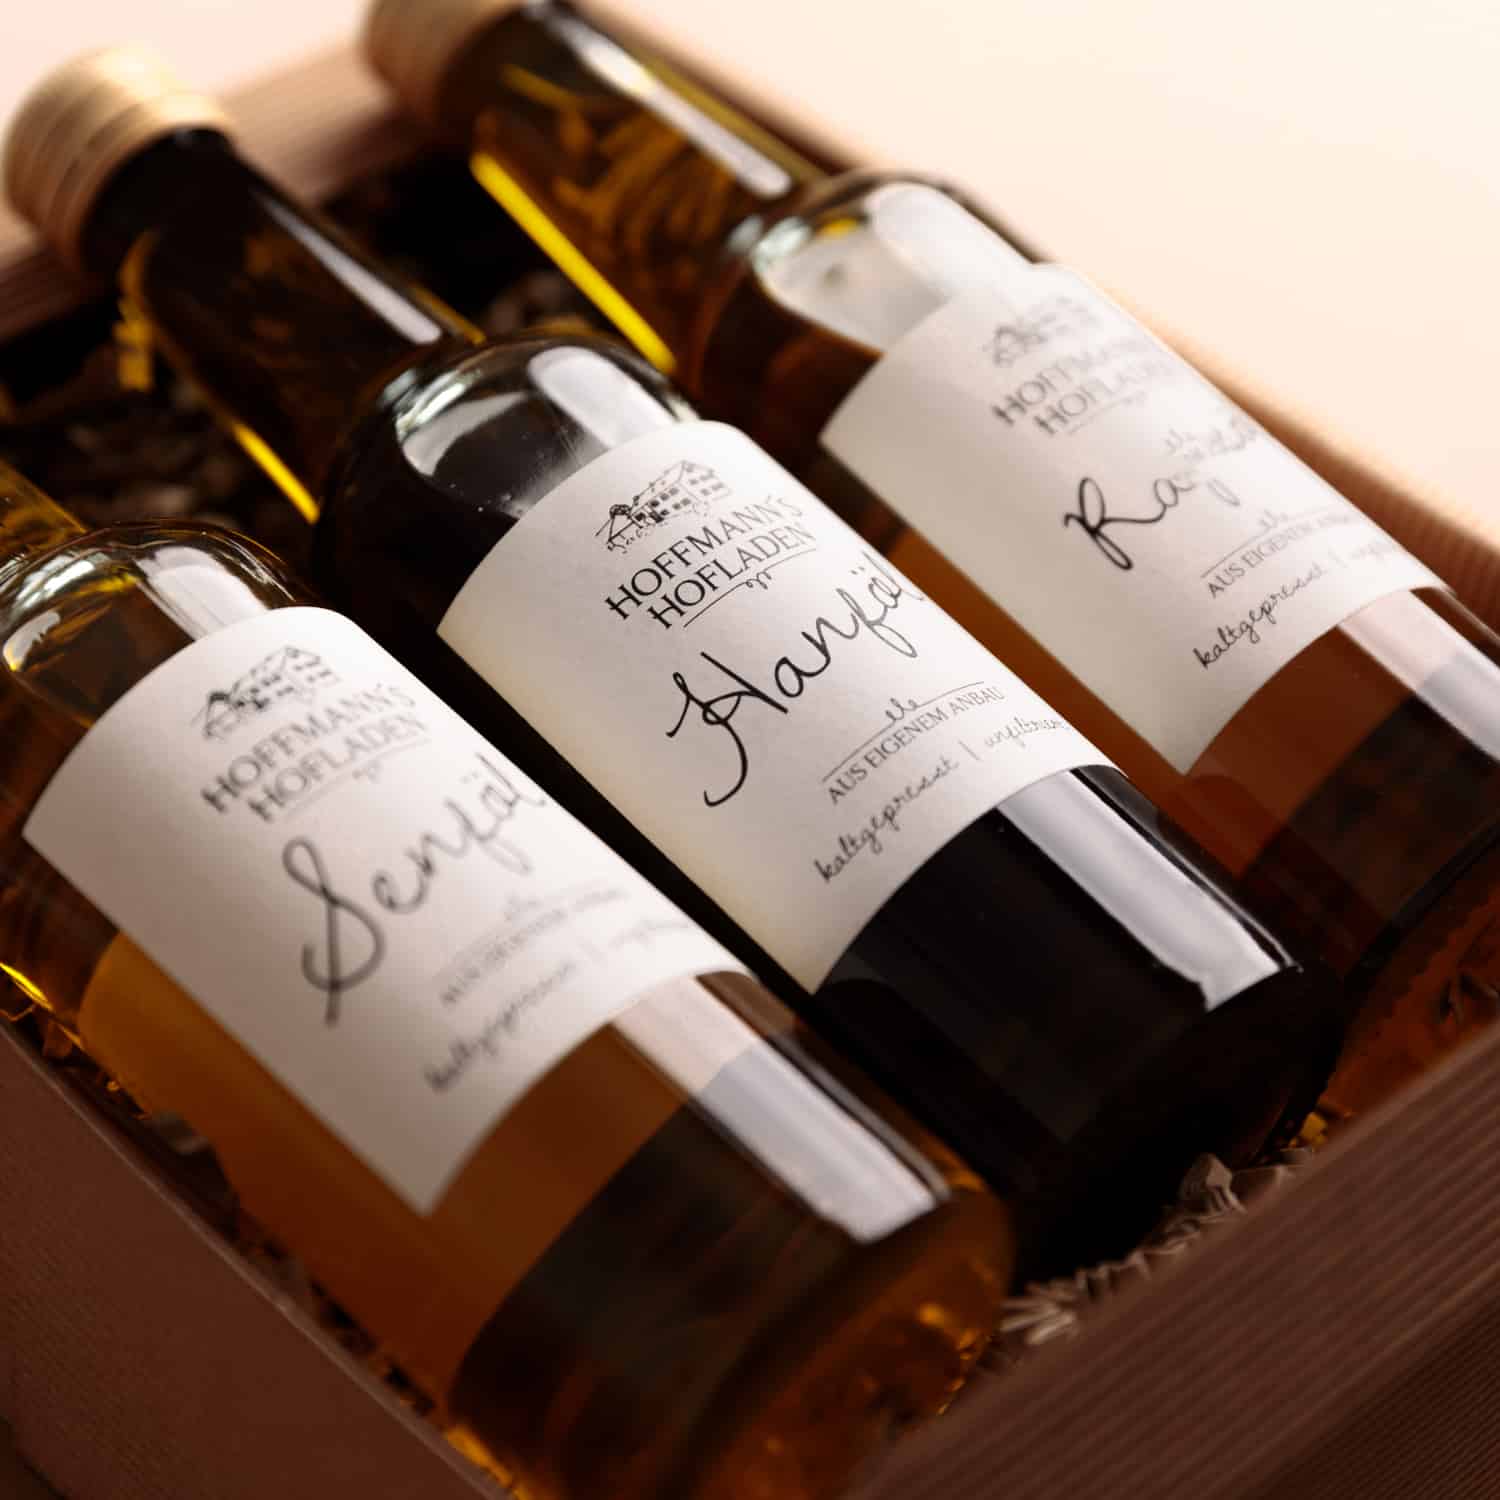 Senföl, Hanföl und Rapsöl von Hoffmanns Hofladen in einer Geschenkbox (Detailansicht)